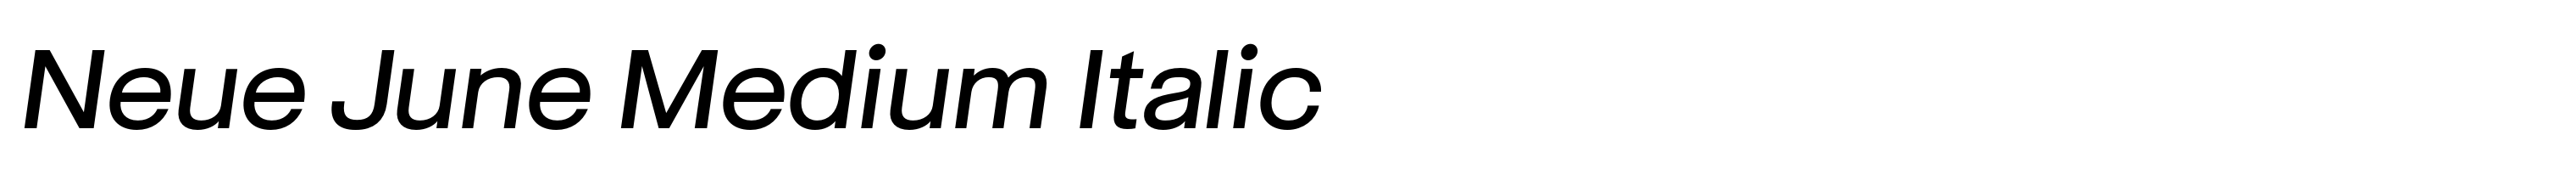 Neue June Medium Italic